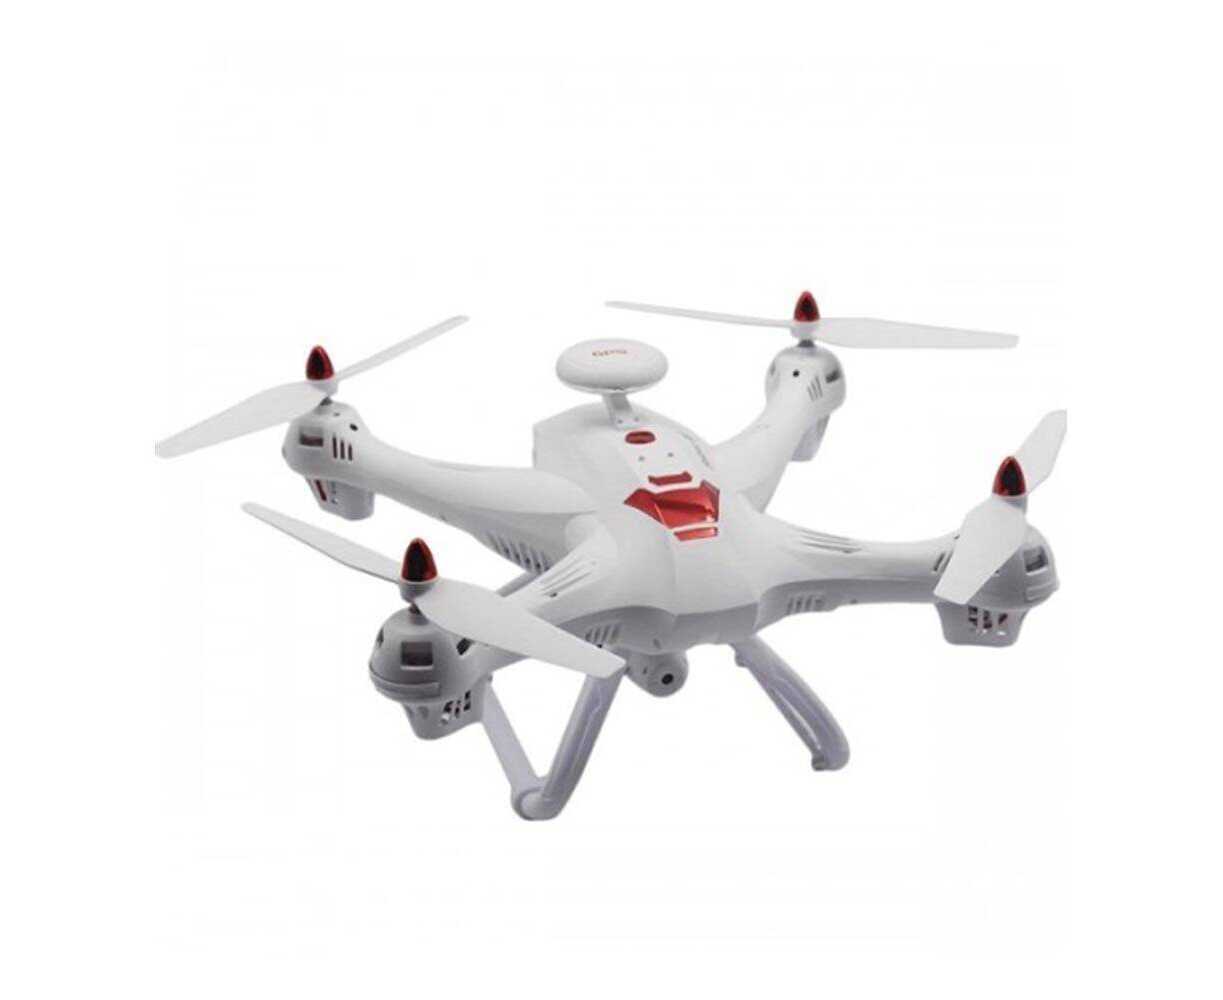 En plastique RC Pliable Bras Drone RC Quadcopter avec 4K Caméra